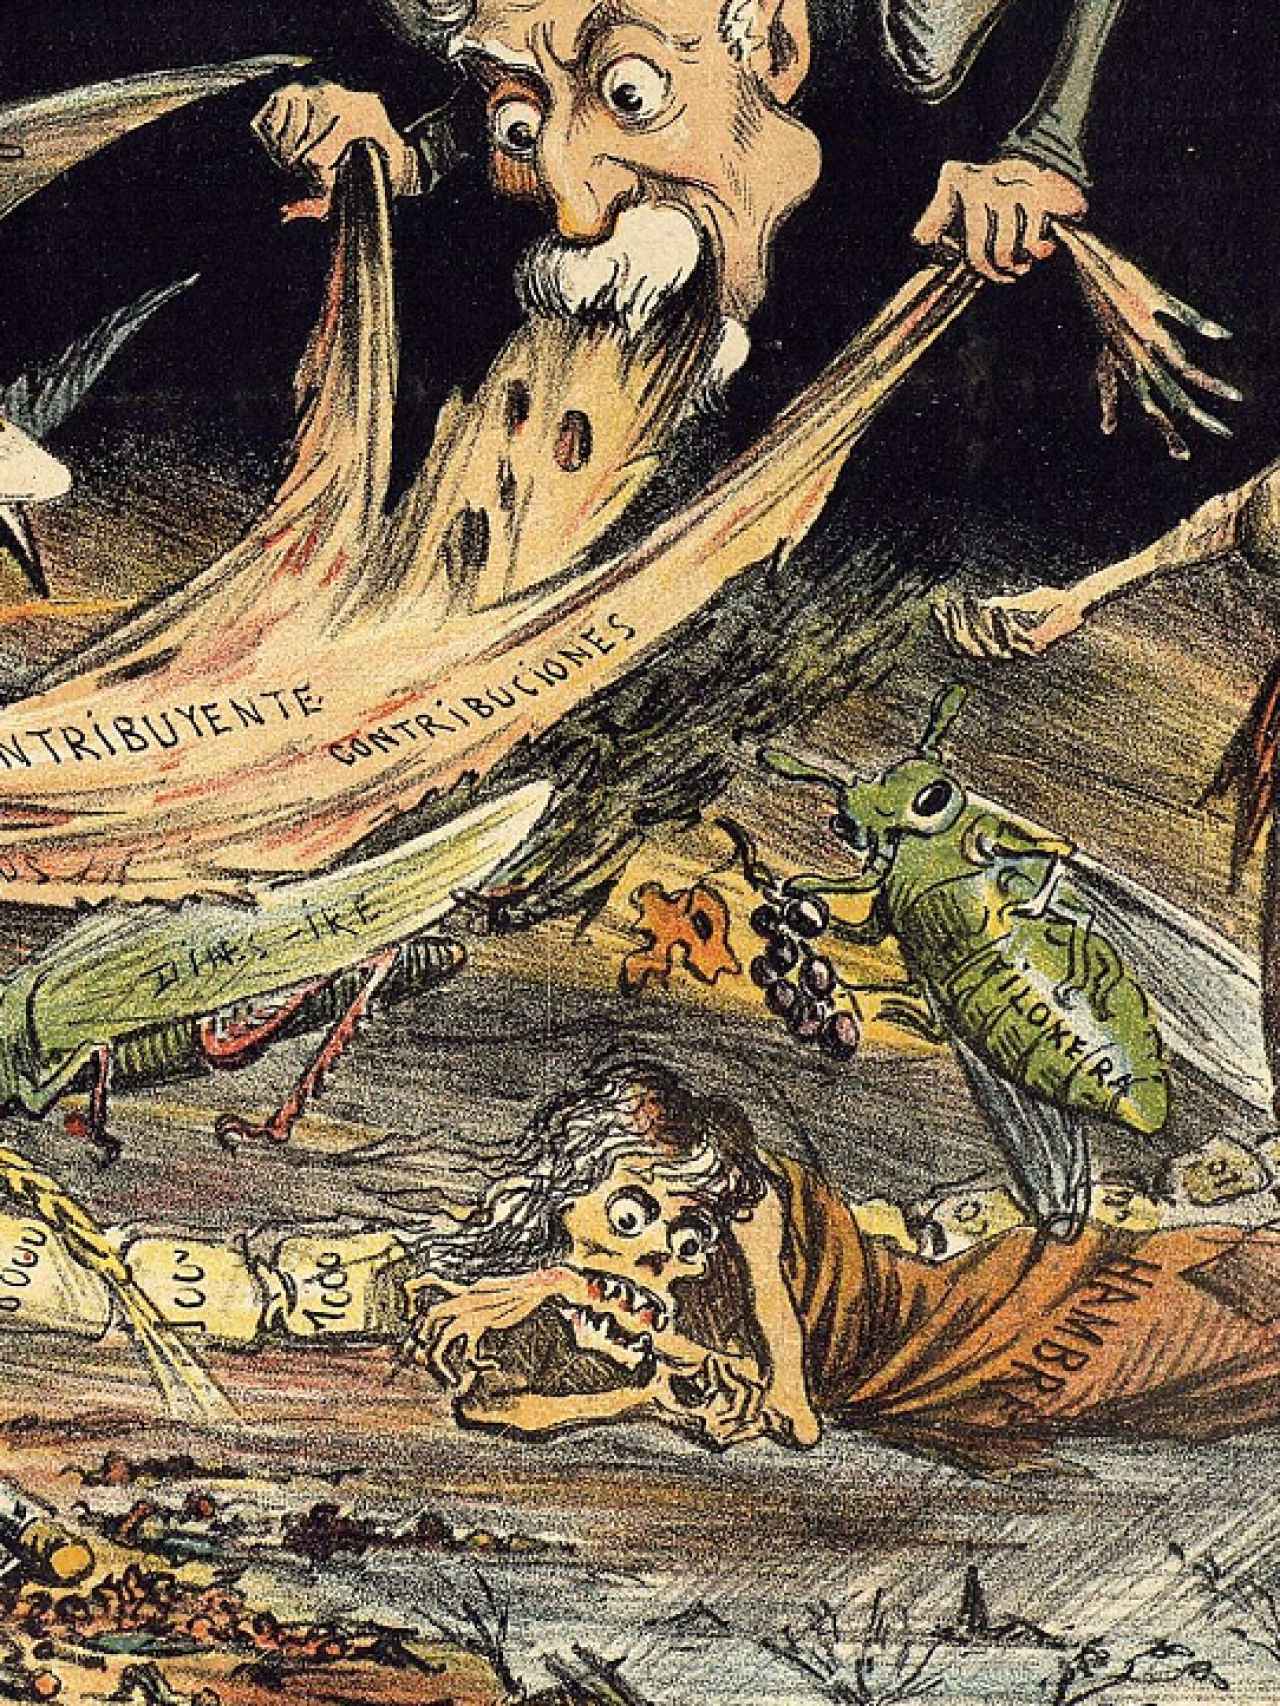 Una caricatura de 1885 en la que la filoxera es una de las plagas que azotaban España.